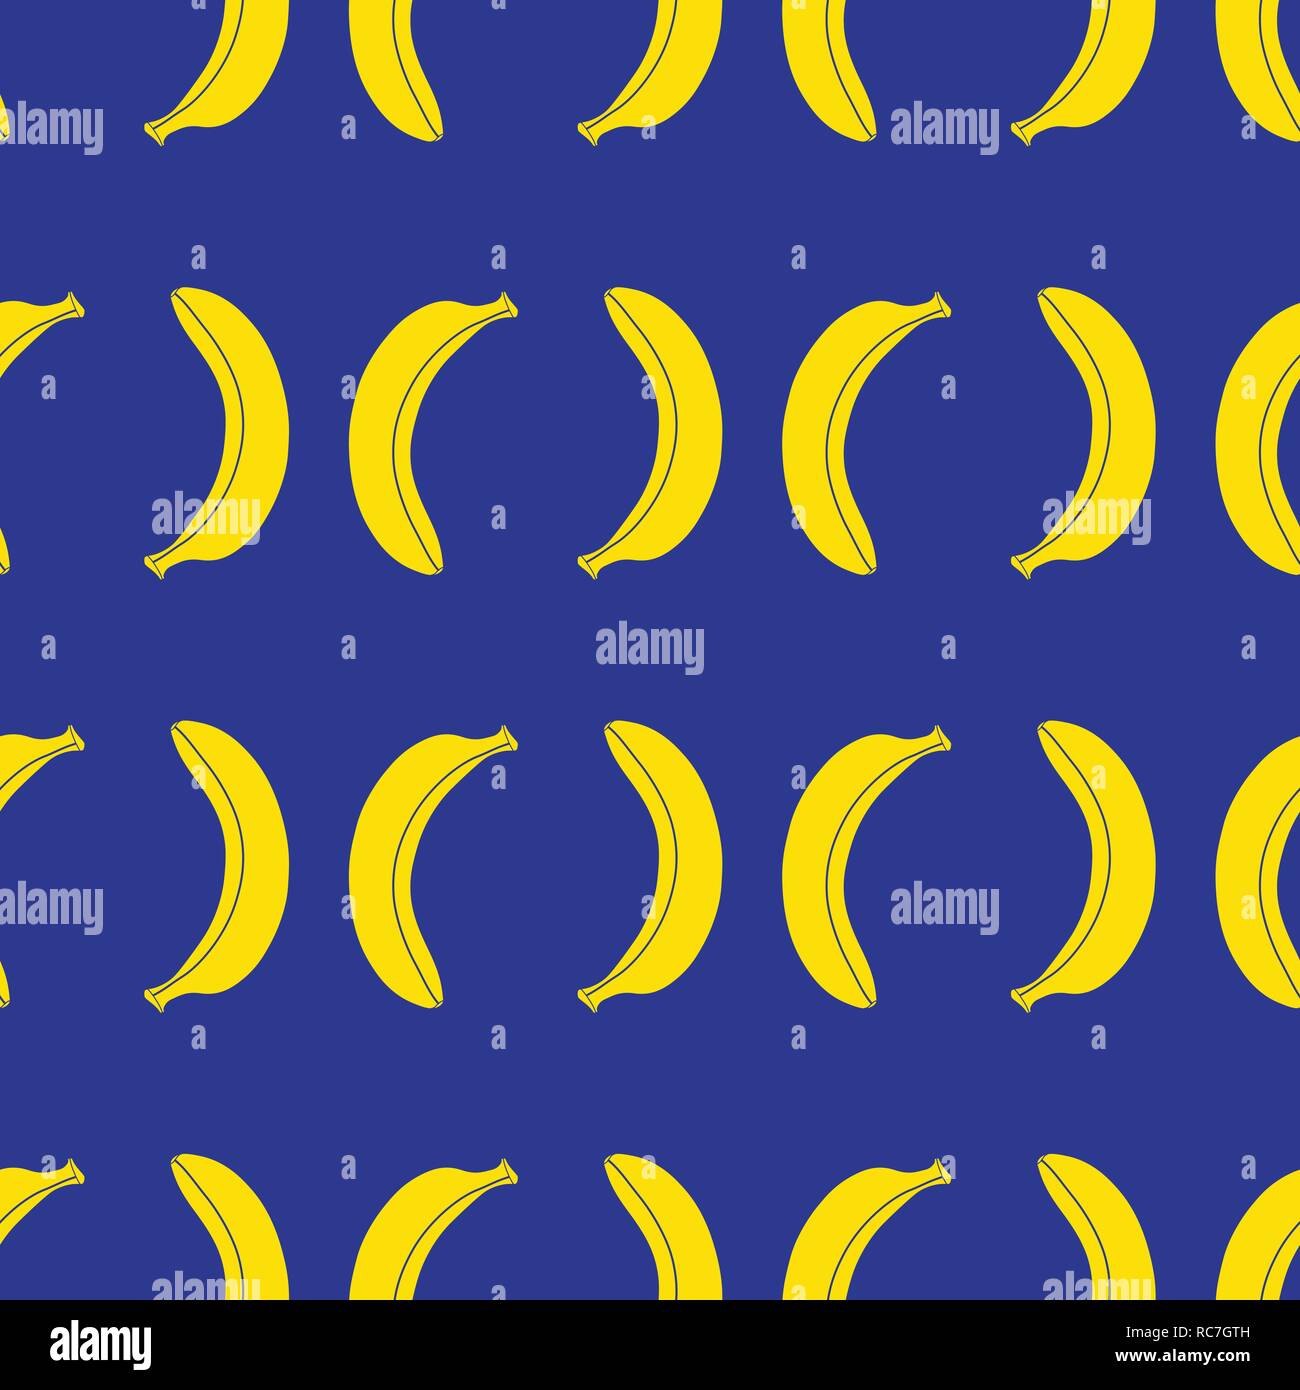 Seamless repeat pattern del vettore delle banane gialle royal su sfondo blu. Frutto giallo. Illustrazione Vettoriale